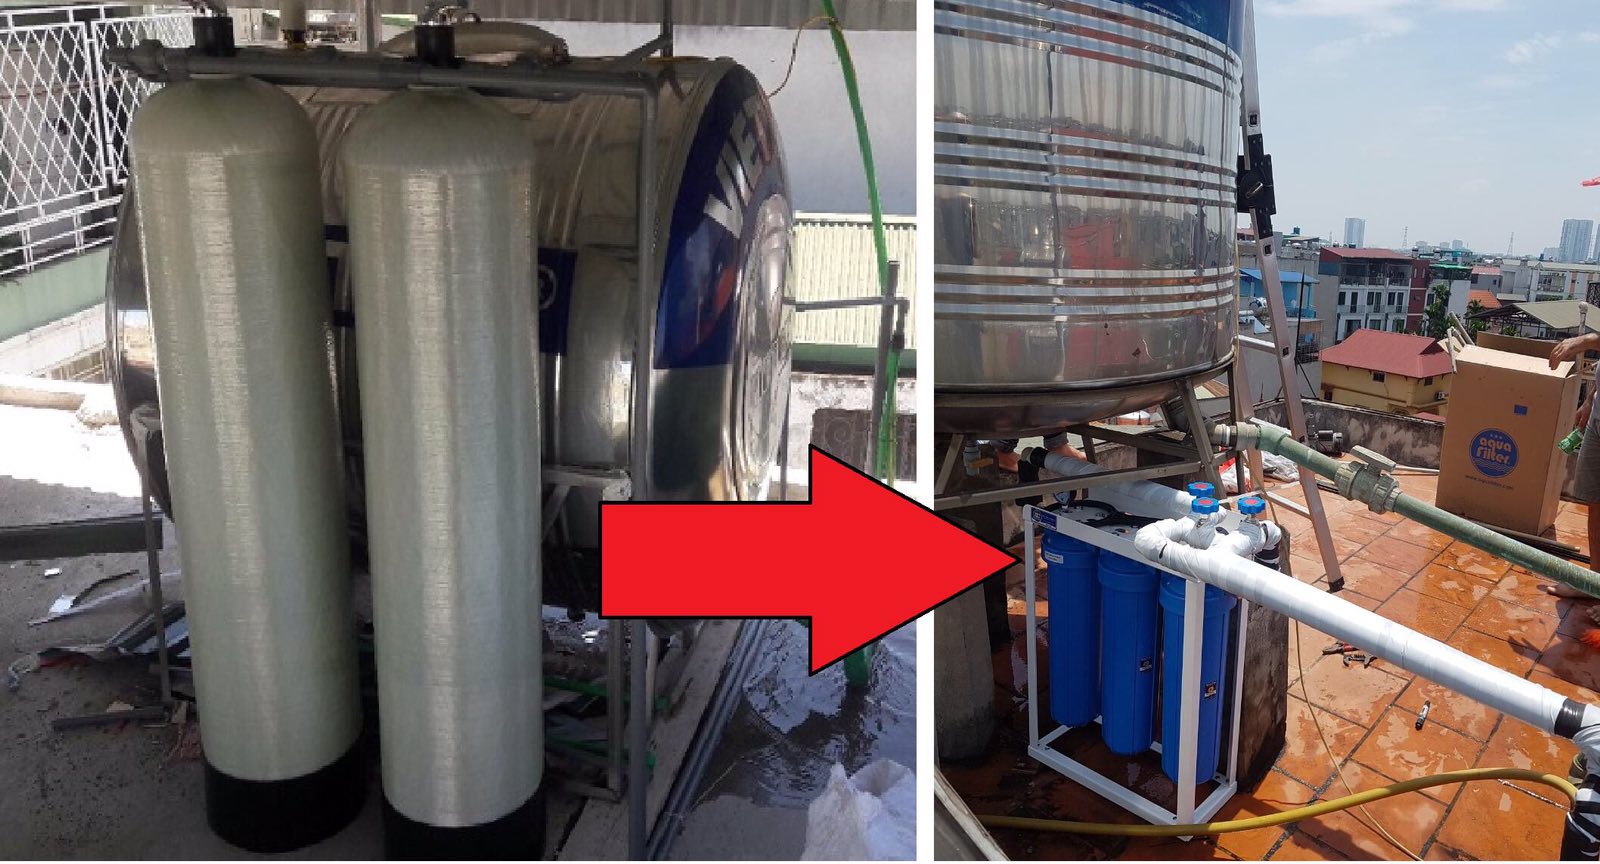 Cột lọc nước composite có nhiều hạn chế nên người dùng chuộng máy lọc nước Aquafilter hơn